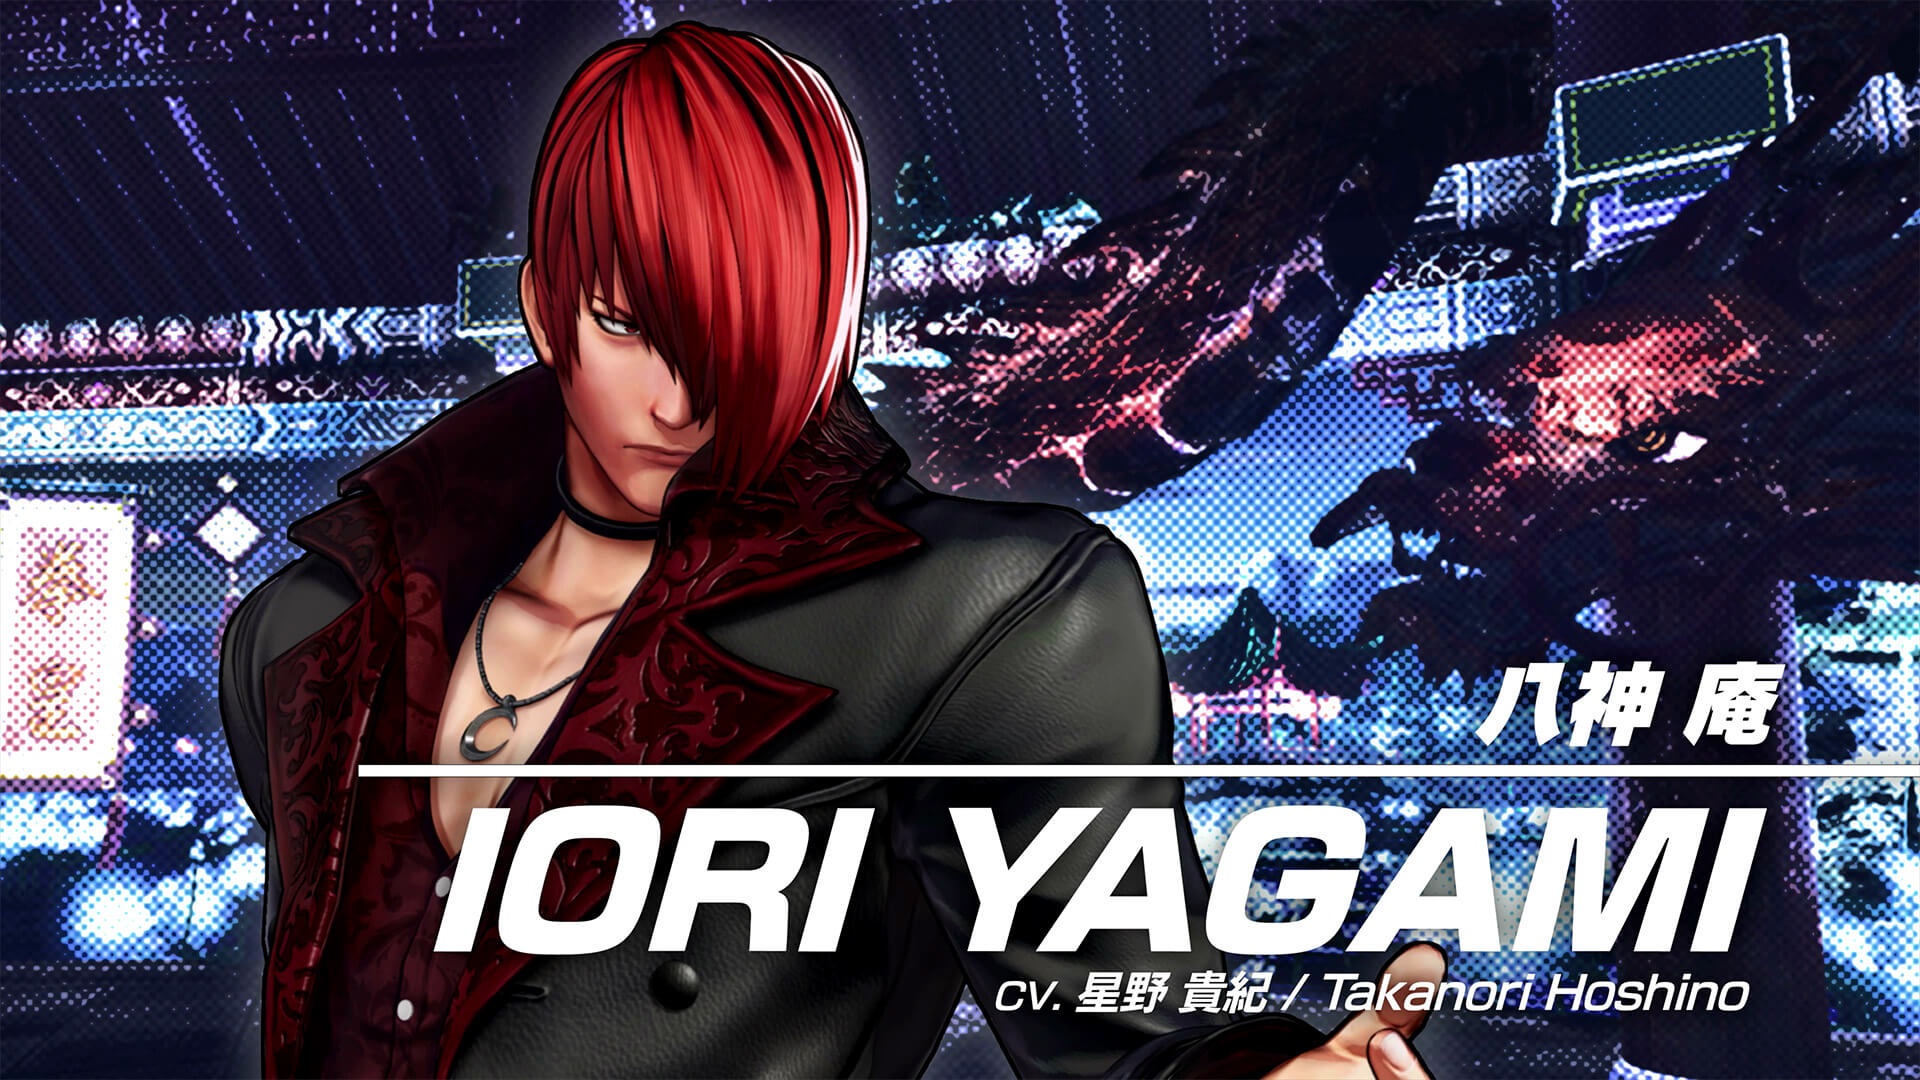 Novo trailer de The King of Fighters XV com Iori Yagami